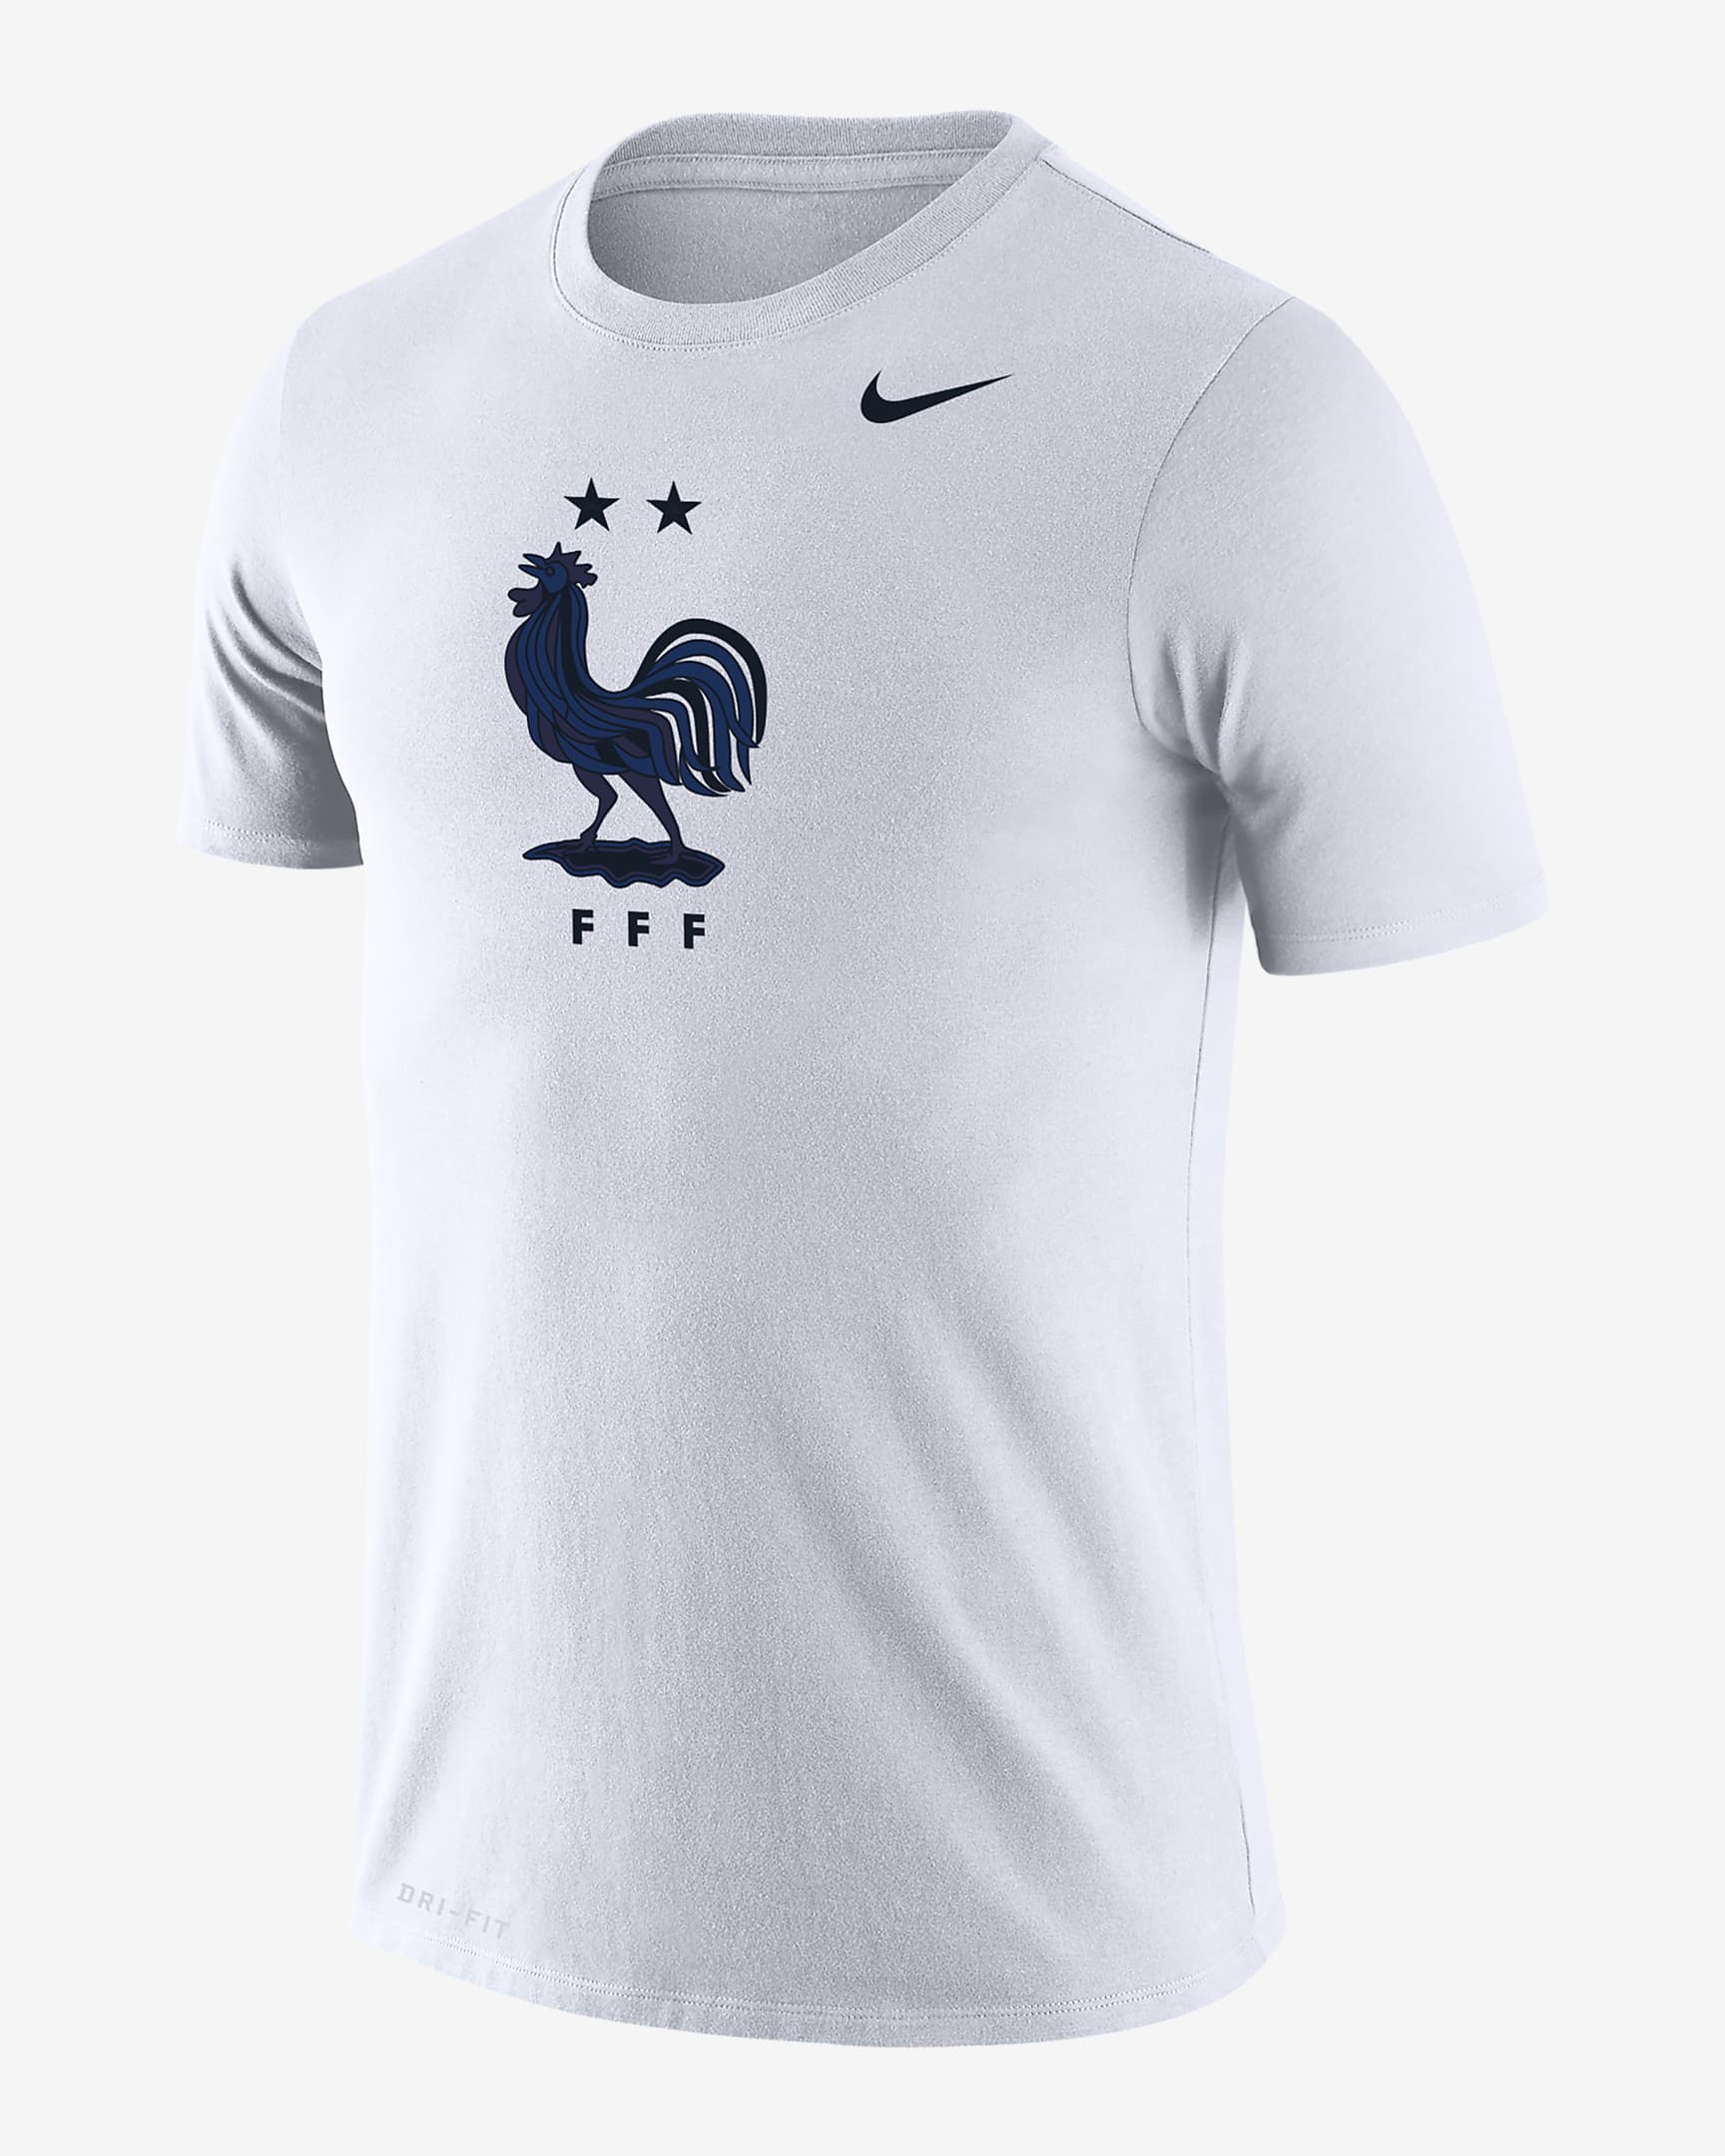 FFF Legend Men's Nike Dri-FIT T-Shirt. Nike.com